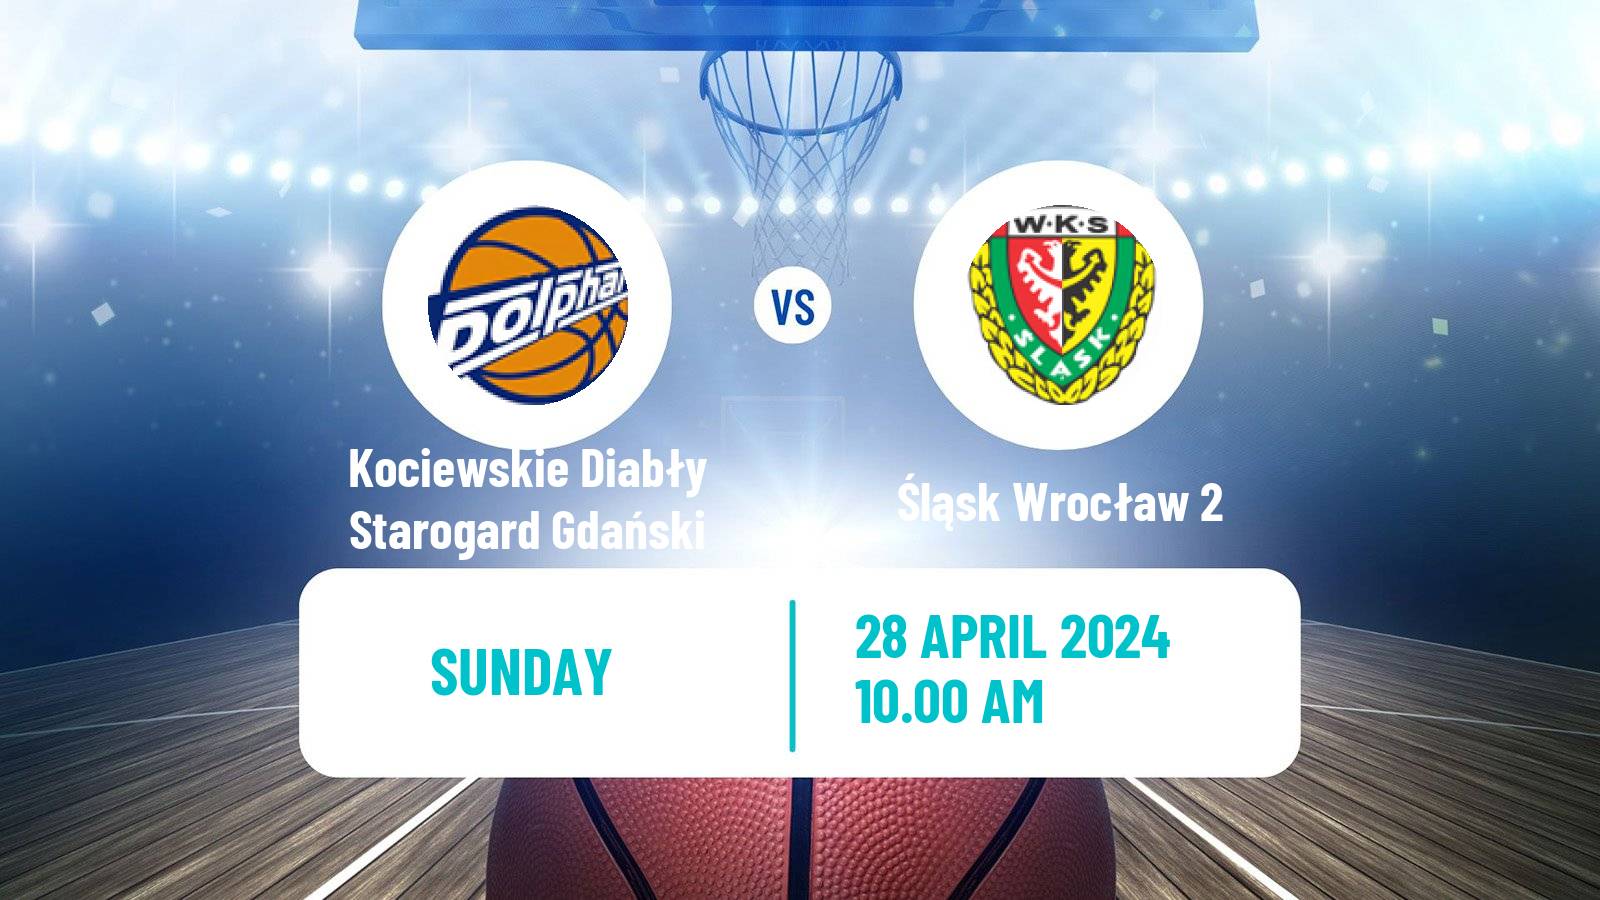 Basketball Polish 1 Liga Basketball Kociewskie Diabły Starogard Gdański - Śląsk Wrocław 2